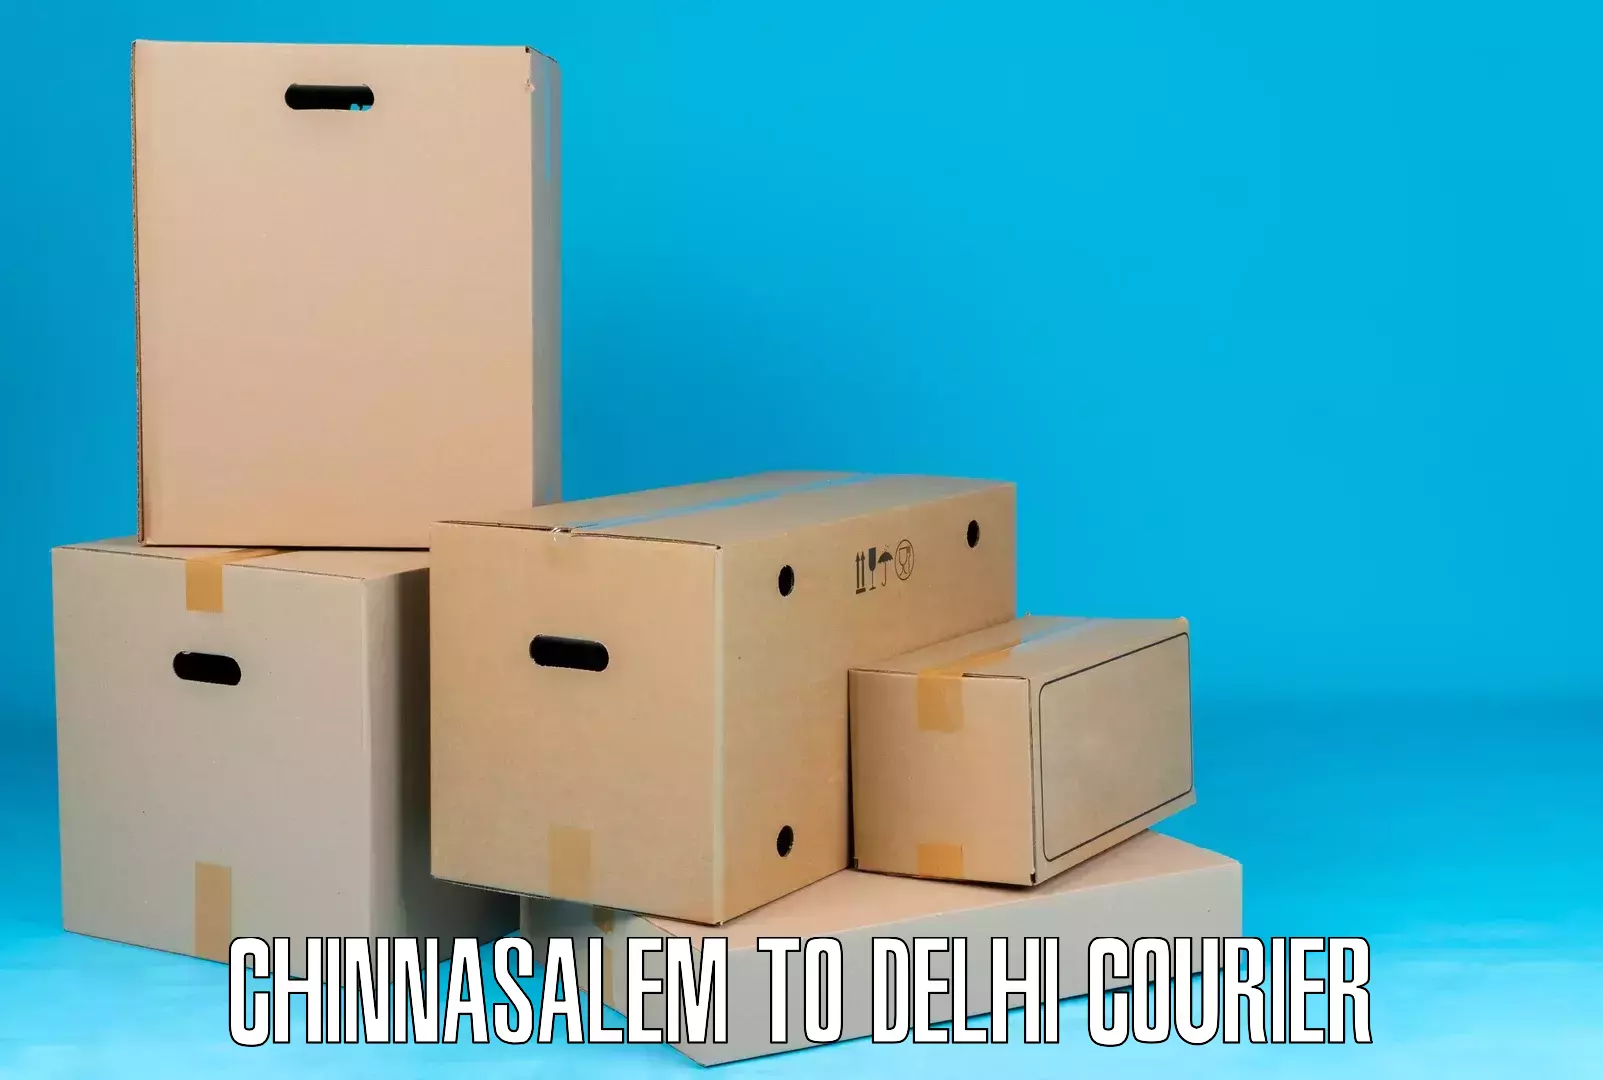 Courier service efficiency in Chinnasalem to Delhi